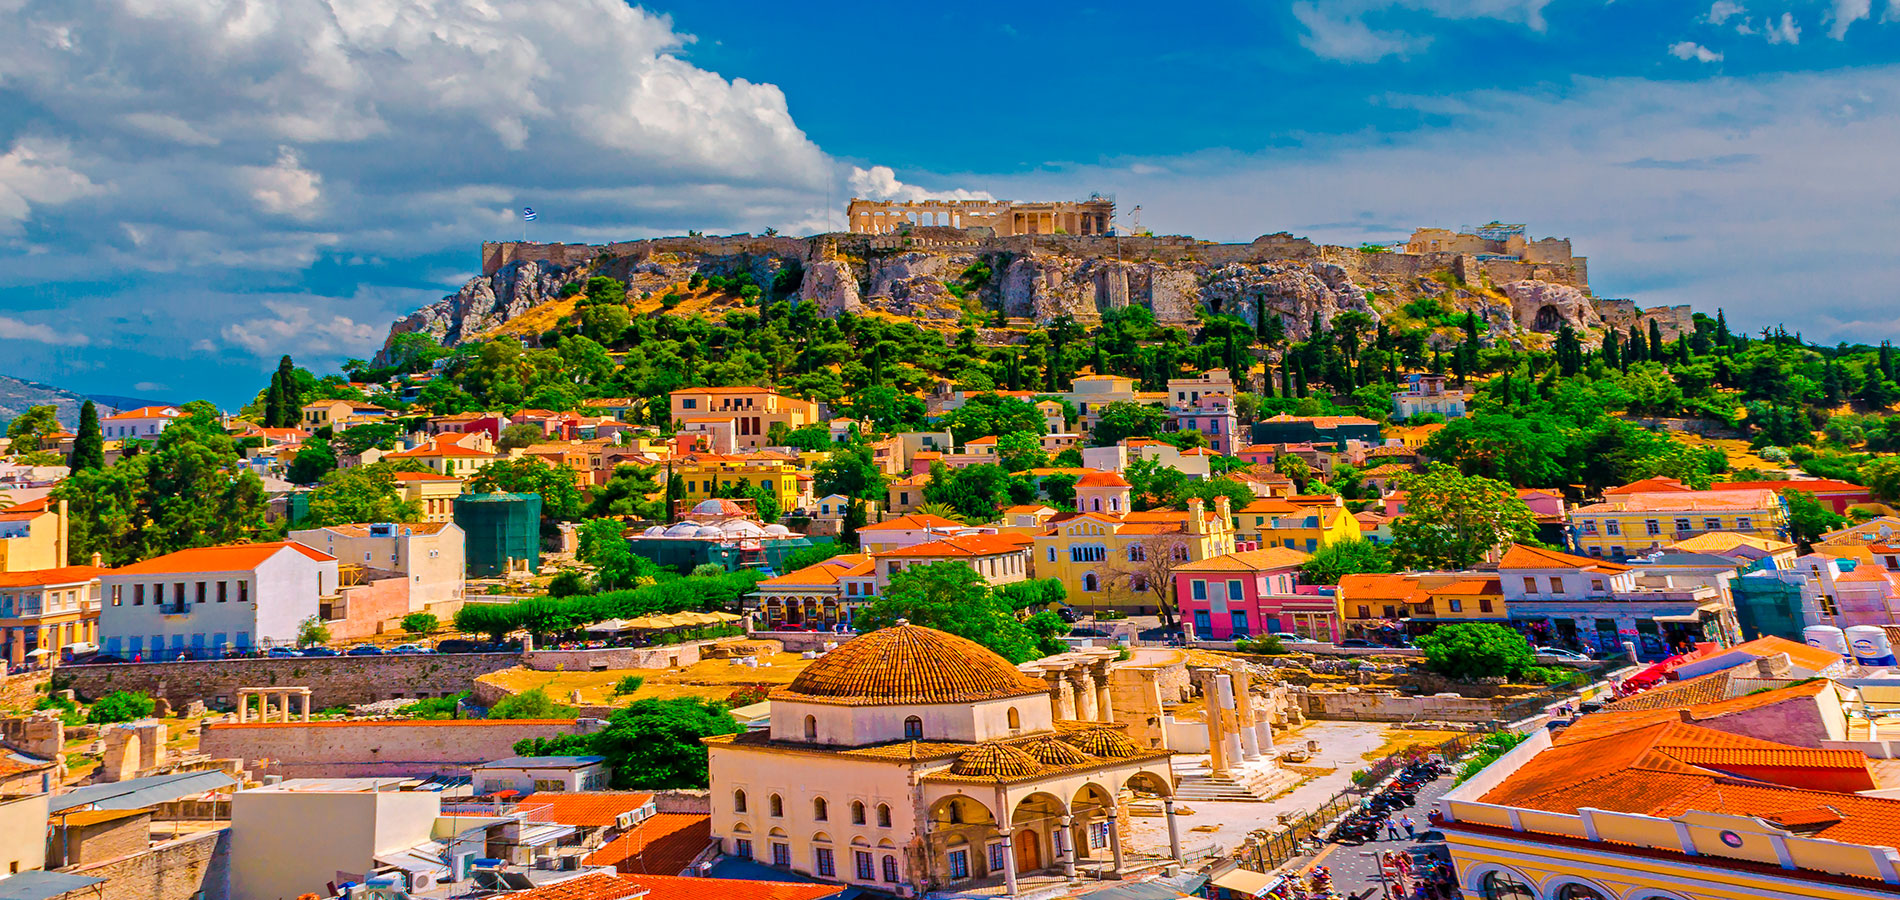 Circuitos por Grecia - Viajes El Corte Inglés